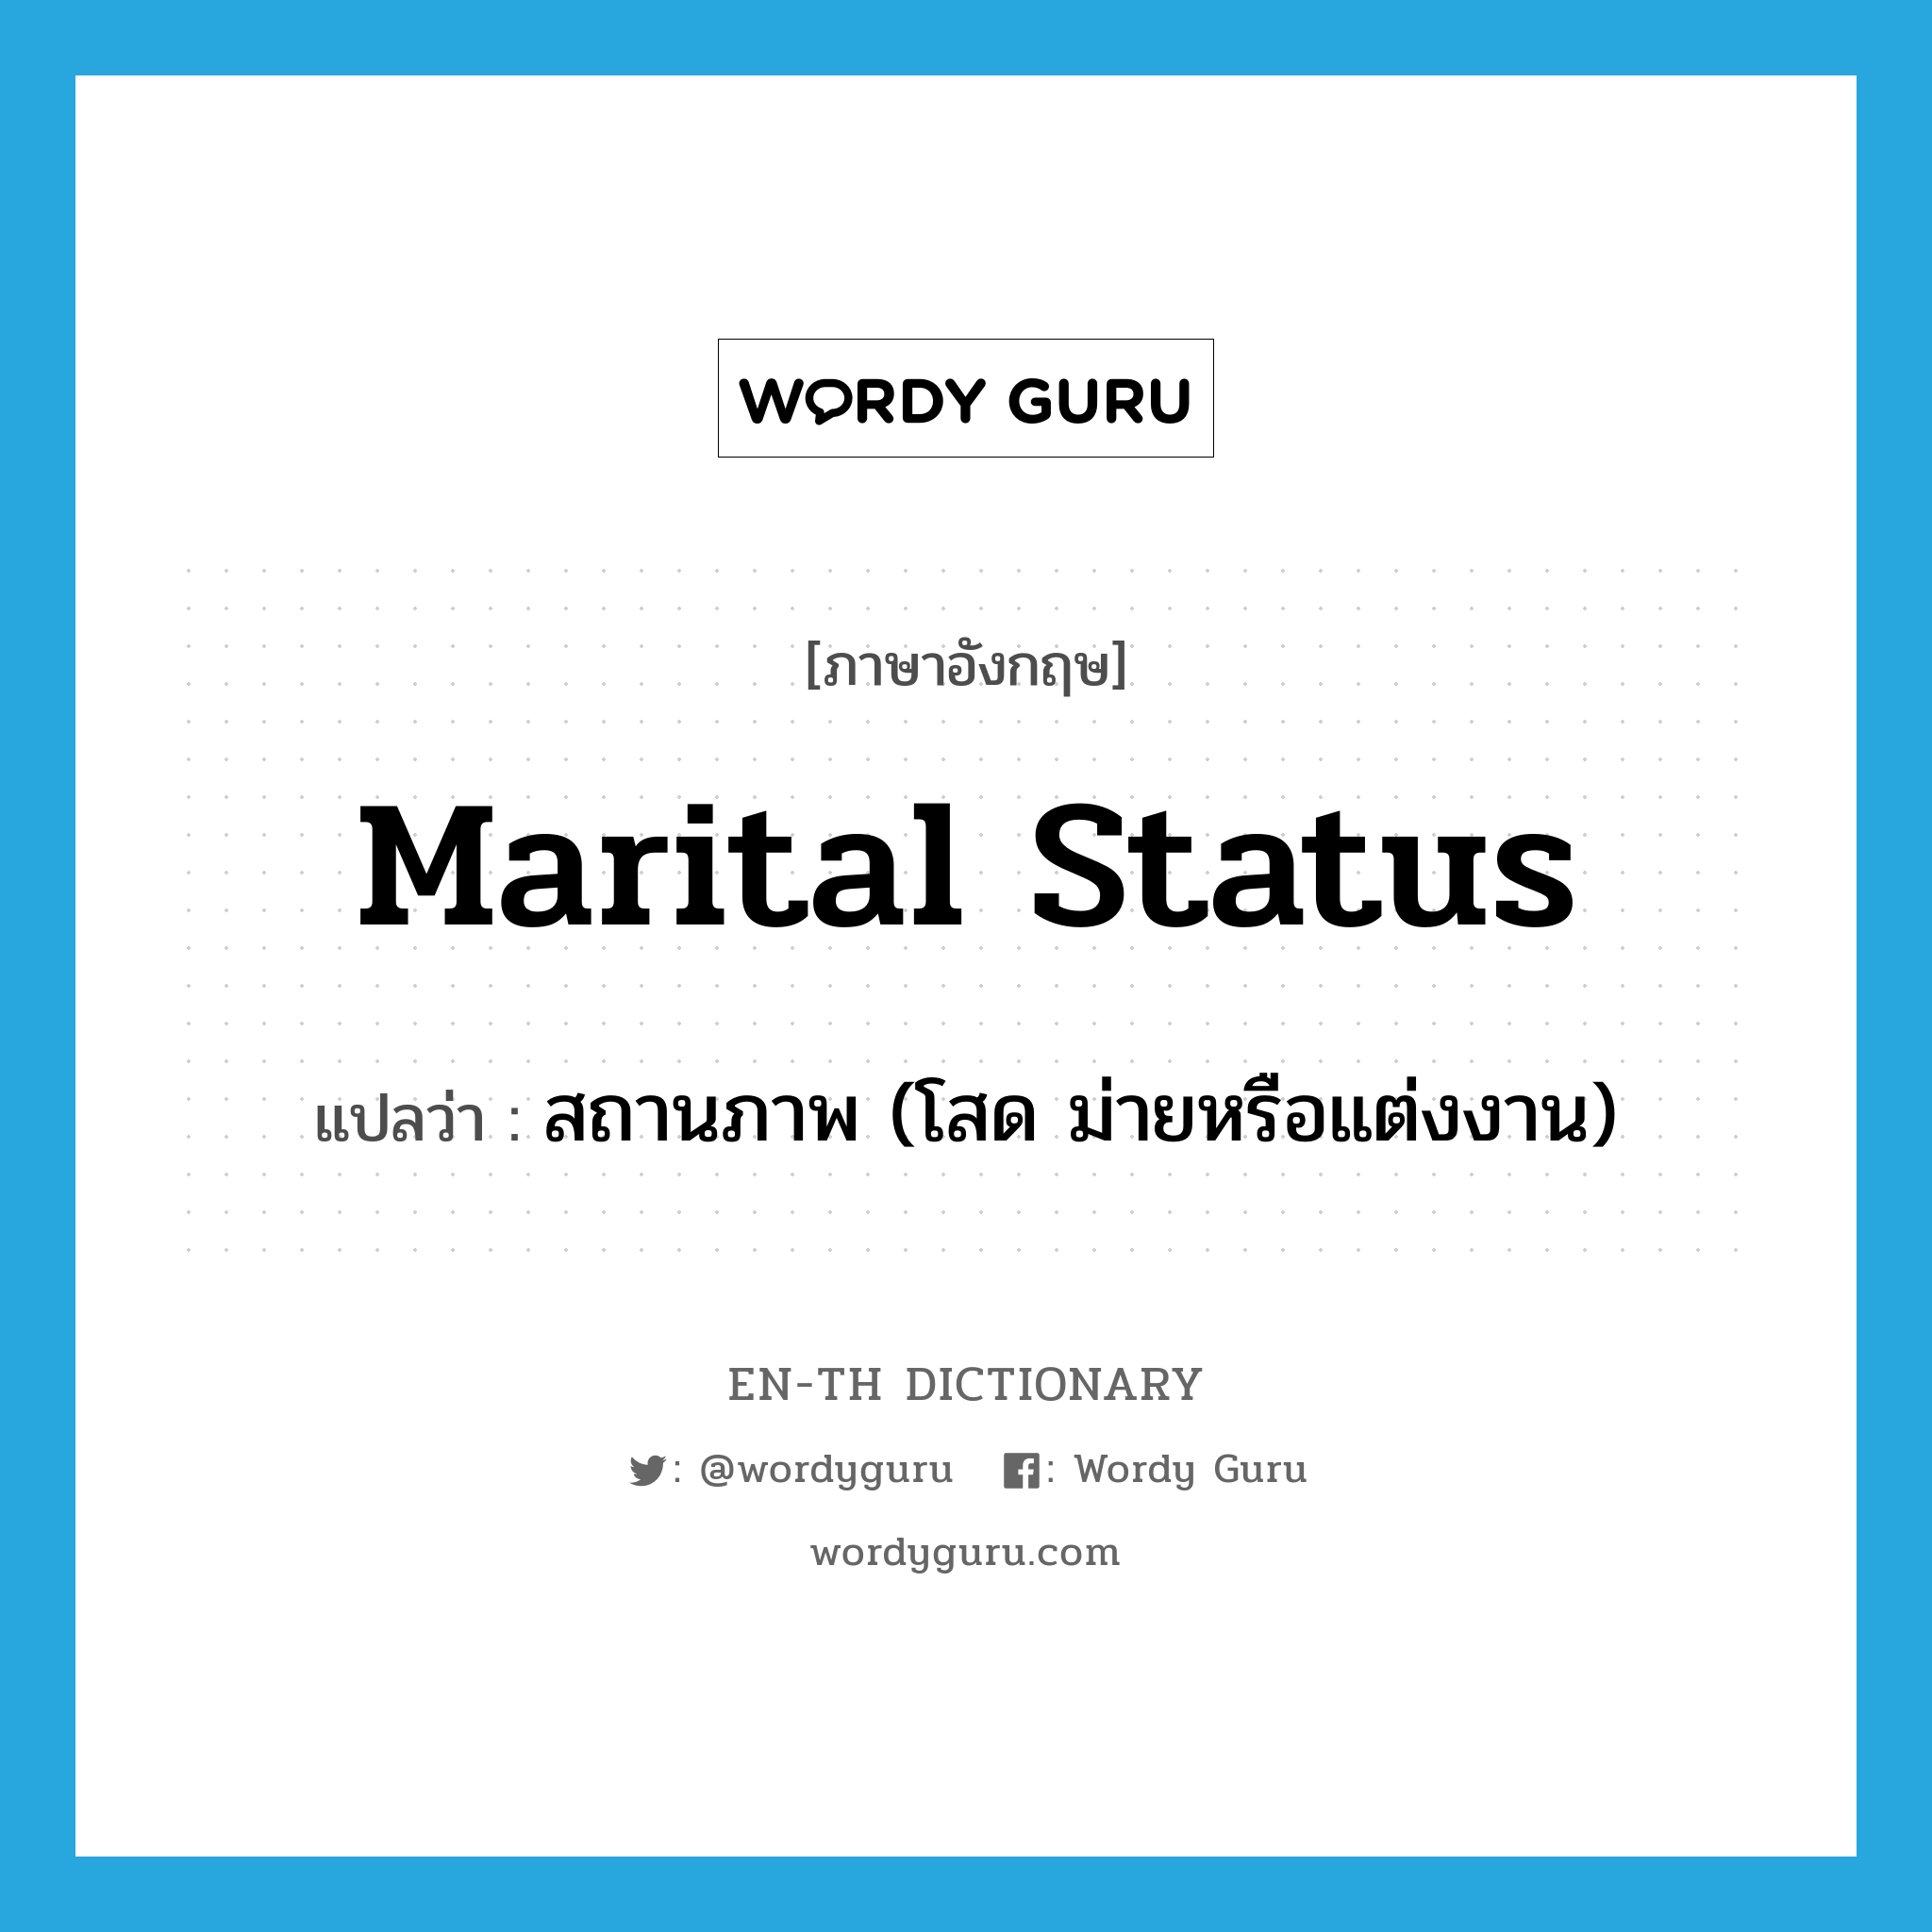 marital status แปลว่า?, คำศัพท์ภาษาอังกฤษ marital status แปลว่า สถานภาพ (โสด ม่ายหรือแต่งงาน) ประเภท N หมวด N